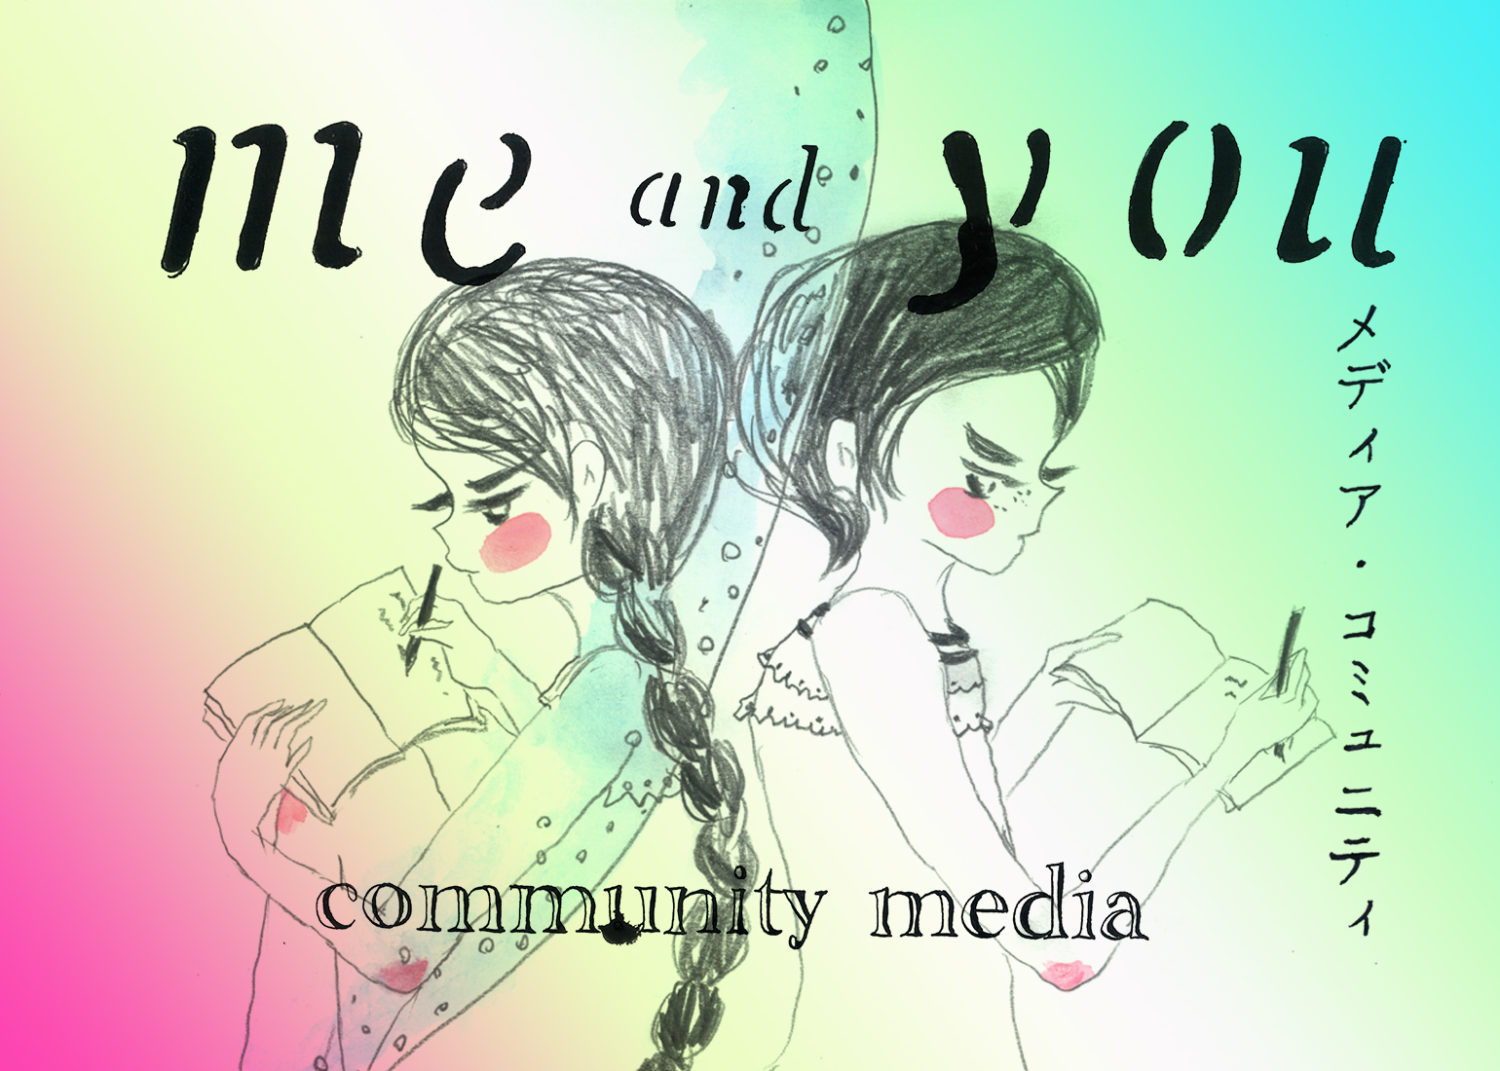 対話から始める「me and you」の新メディア・コミュニティ。クラウドファンディングがスタート